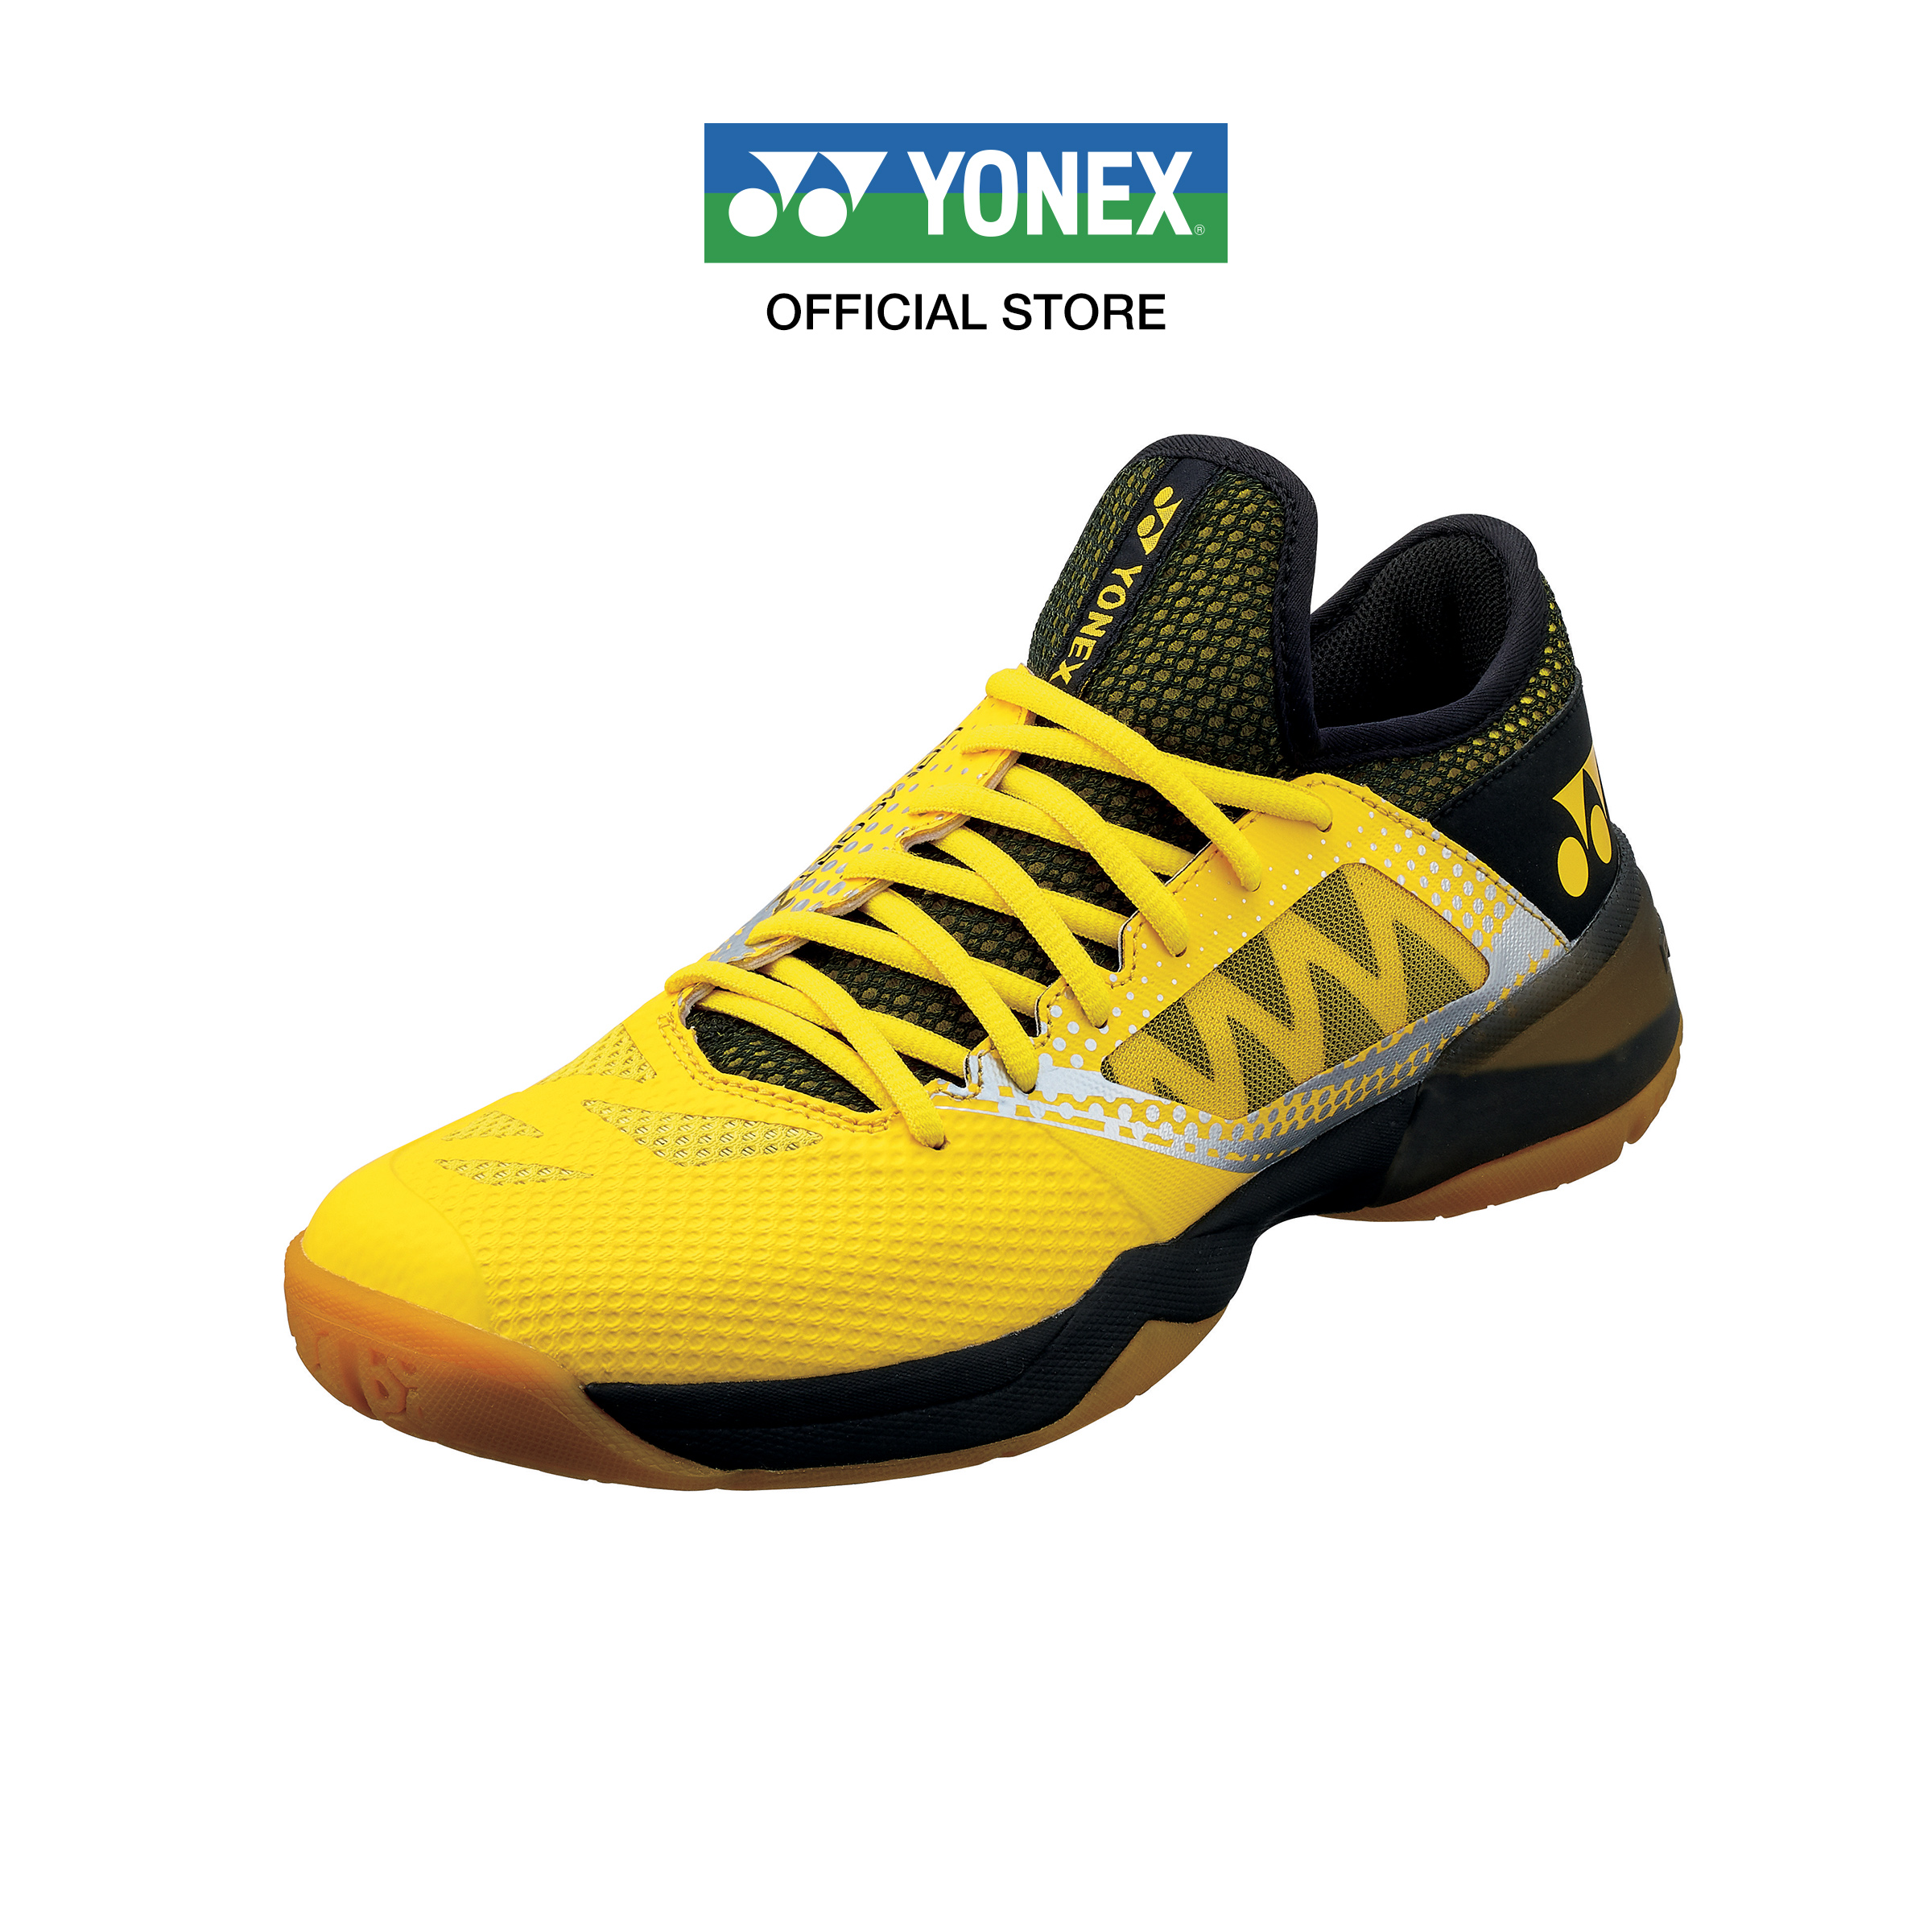 (SIZE US MEN)  YONEX รองเท้าแบดมินตัน รุ่น POWER CUSHION COMFORT Z 2 MEN (SHBCFZ2M) รองเท้าในความรู้สึกนุ่มสบายและทำให้คุณเคลื่อนไหวได้อย่างมั่นคงเฉียบคม